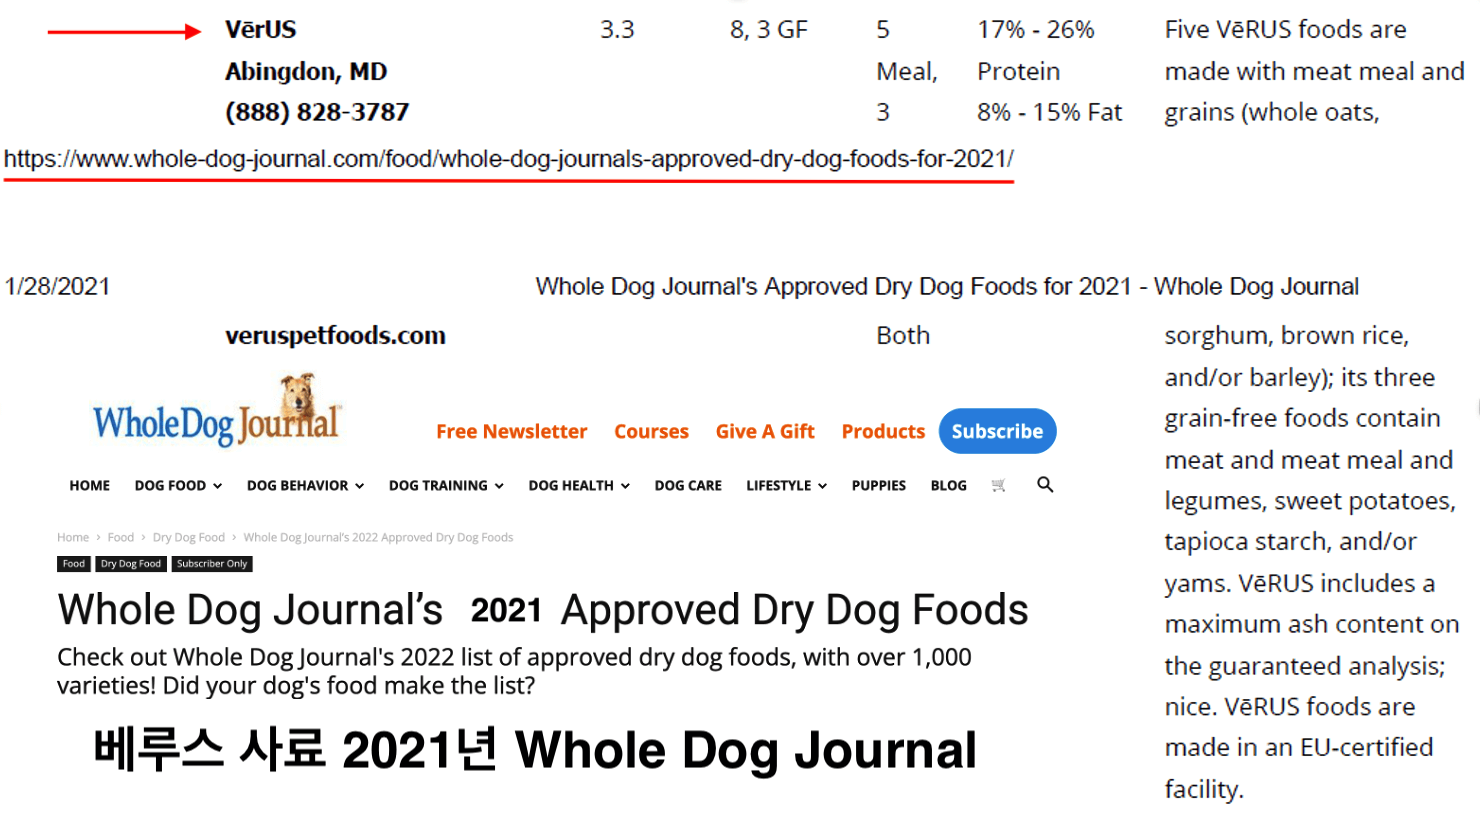 베루스사료 2021년 Whole Dog Journal 추천 사료 브랜드, 꾸준하게 일관된 품질관리, 미국시장에서도 찾기 힘든 수준의 오메가3 함유량